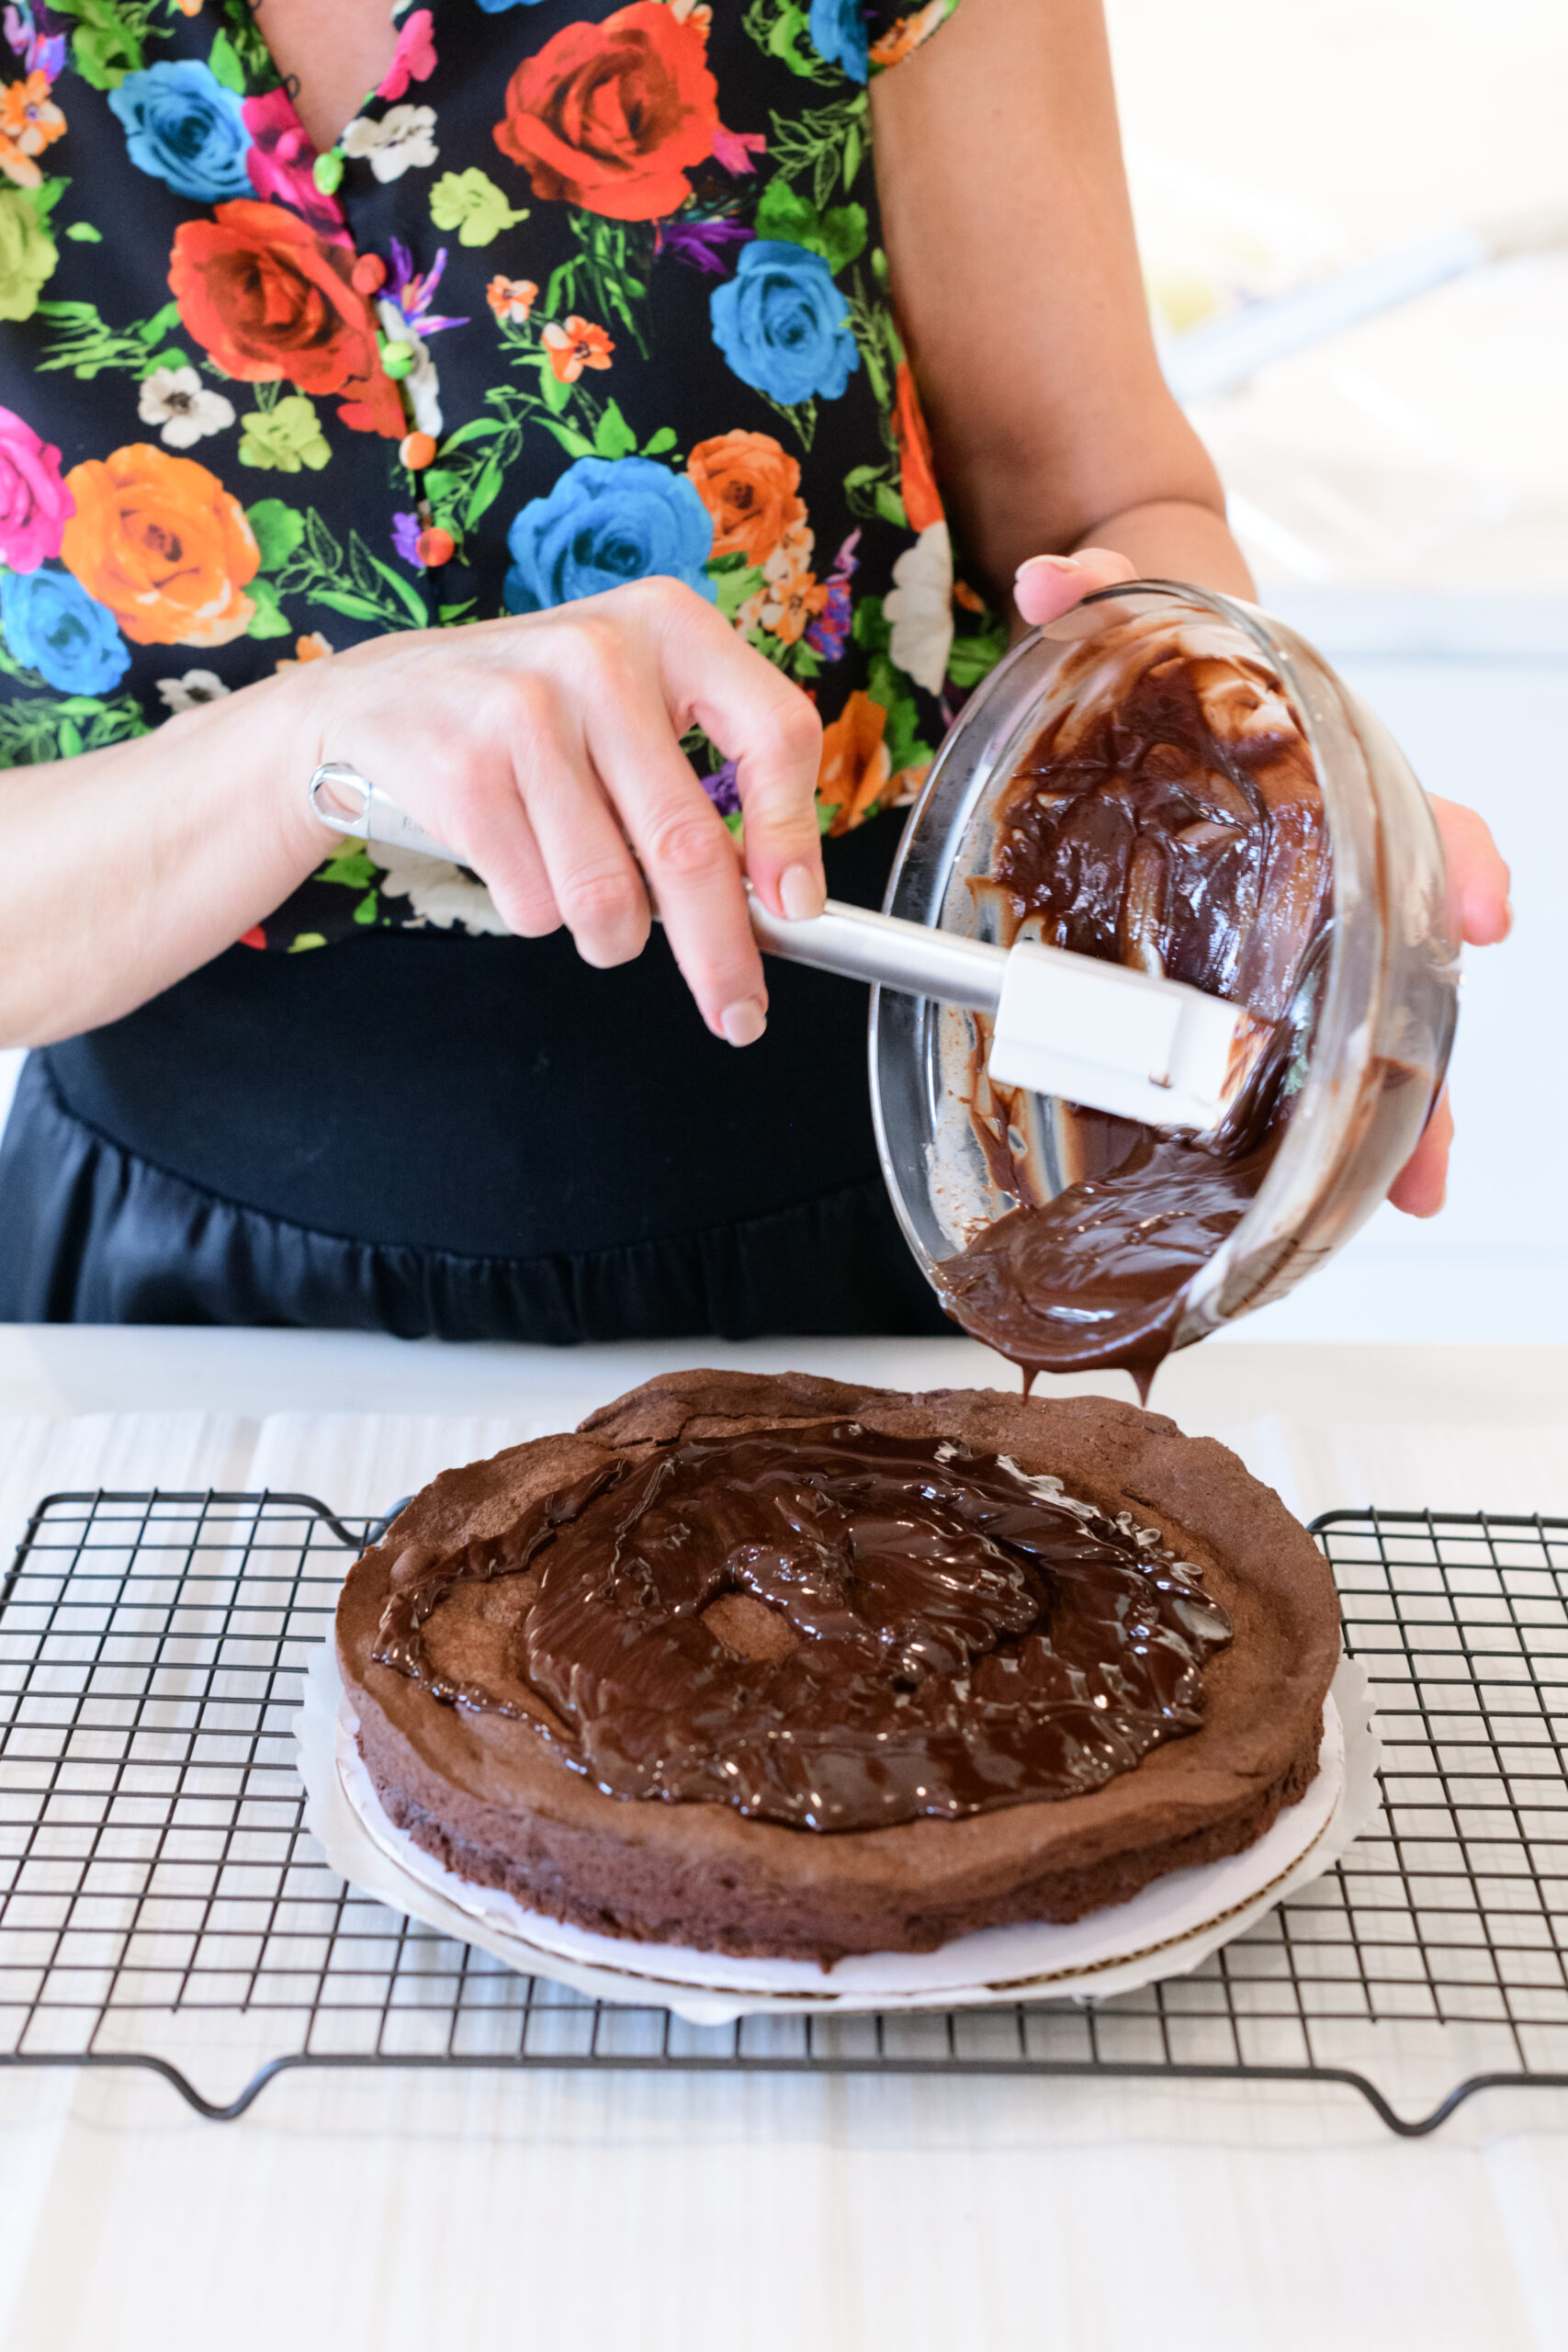 Flourless Chocolate Cake

#dessert #recipe #cake #chocolate #chocolatecake #williamssonoma #baking #holidaybaking #cakepans #coolingrack #amazon #icing #icingspatula #servingutensils #austinfitmagazine